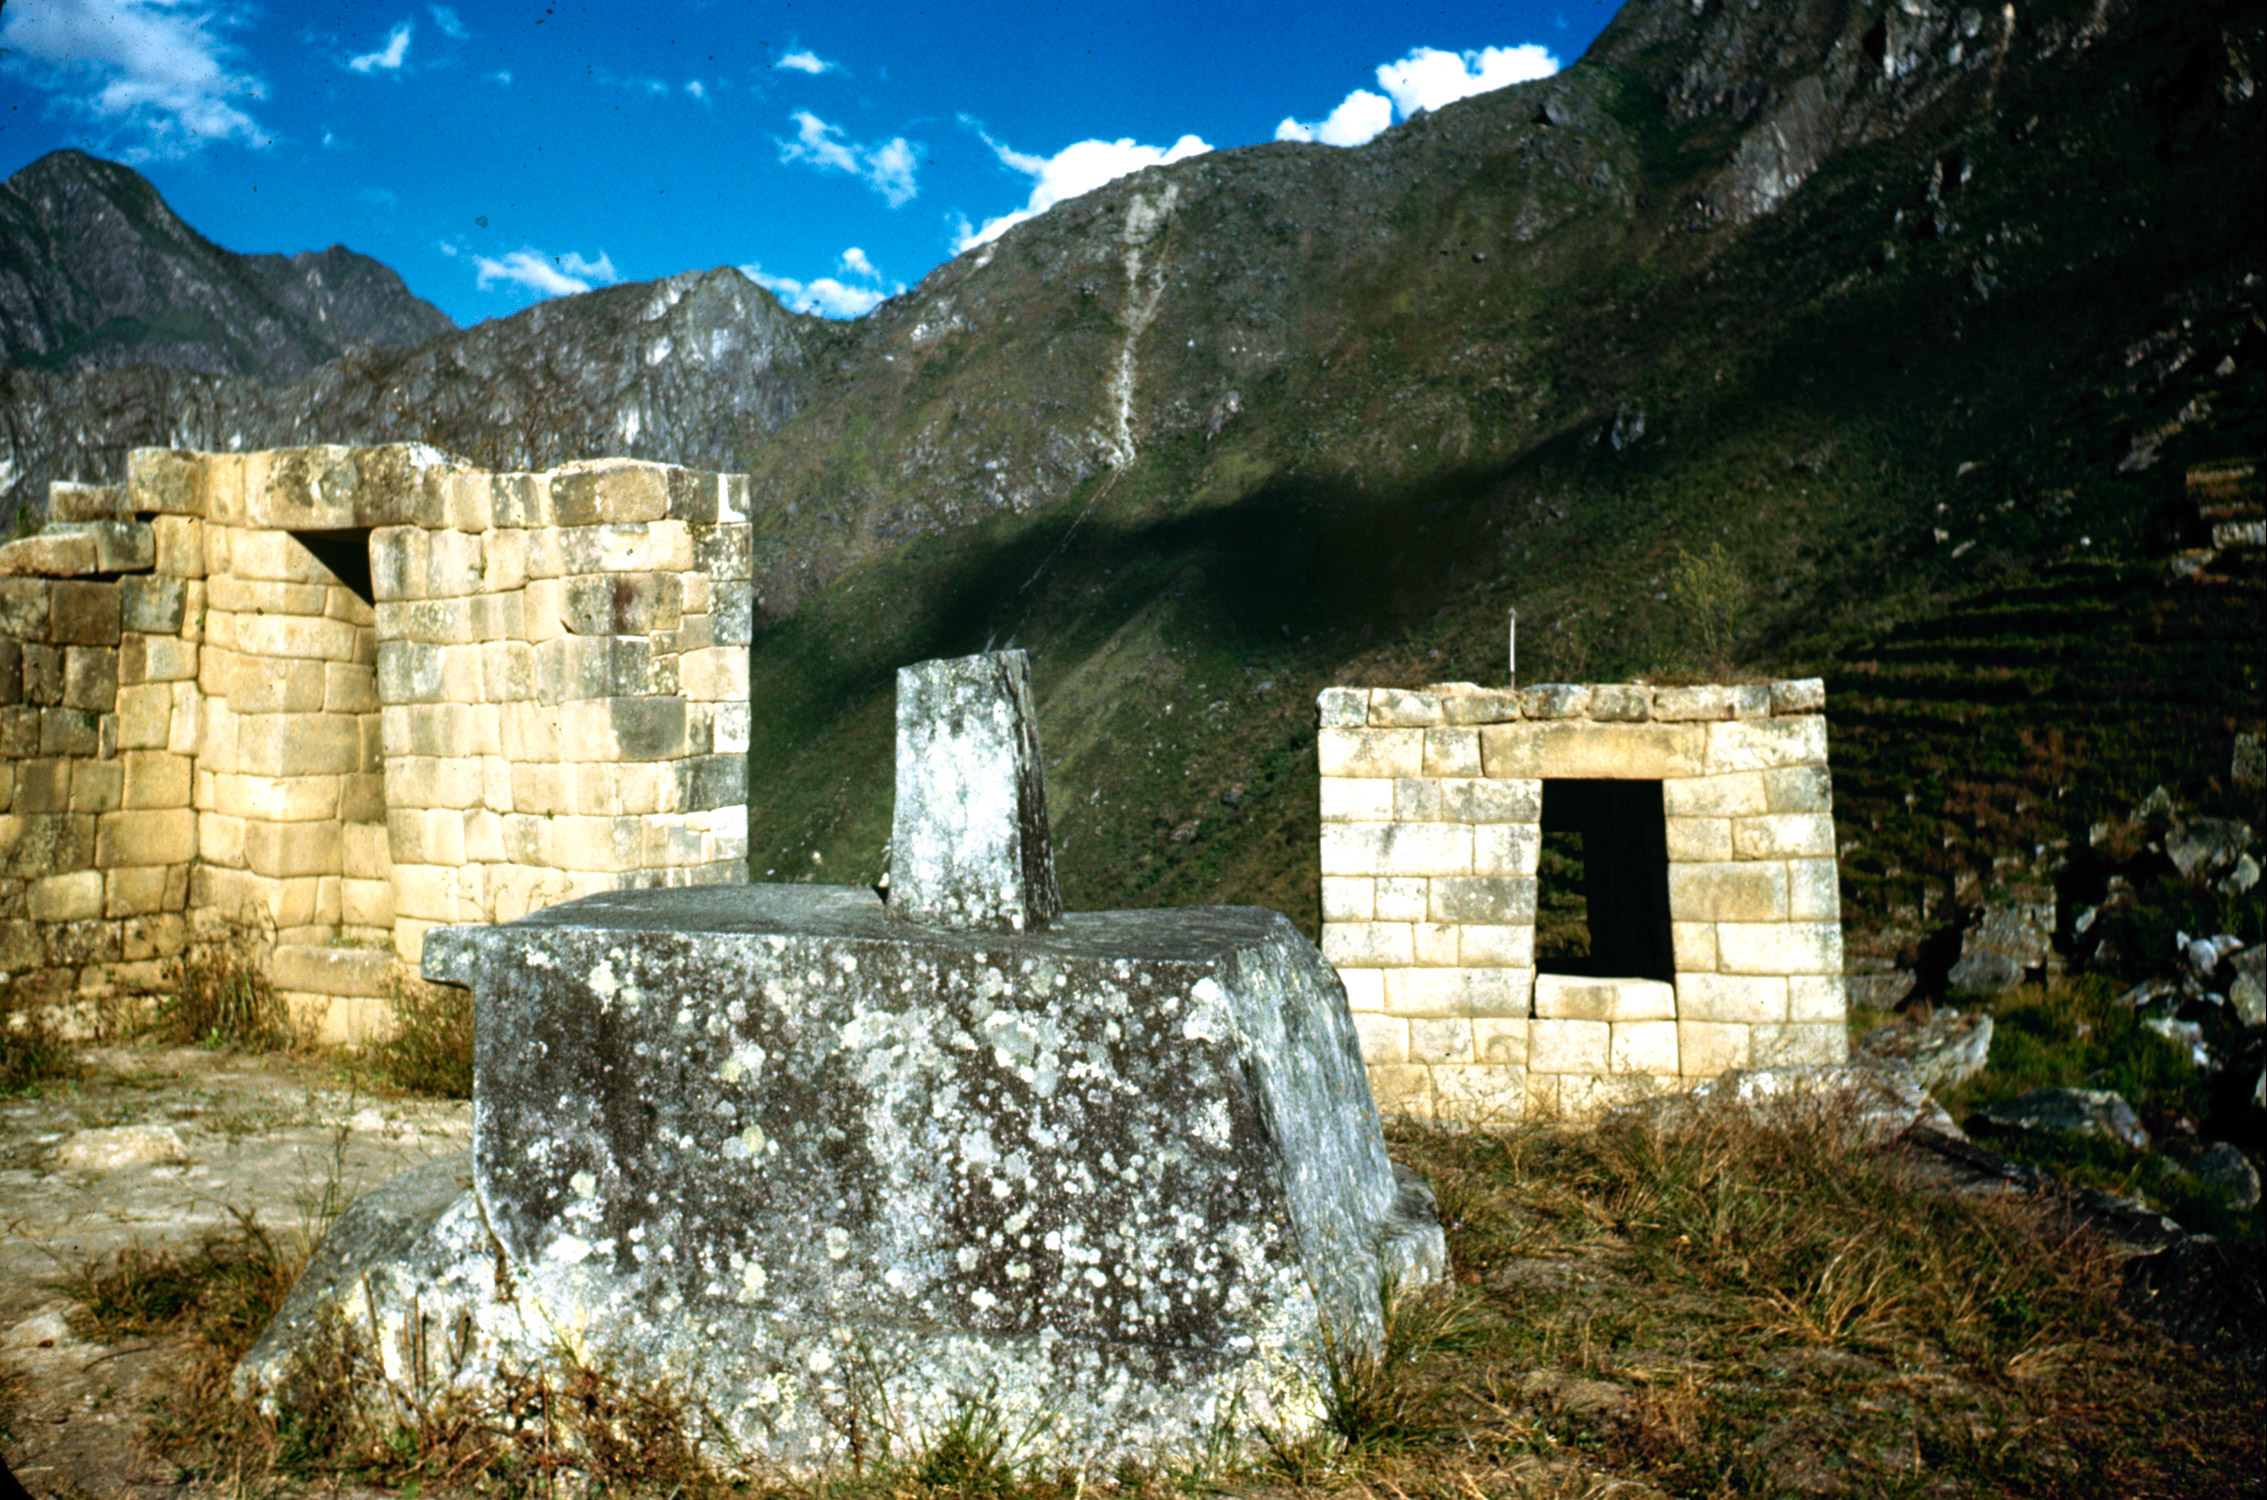 The Inca Ruins of Machu Picchu in Peru, 1945